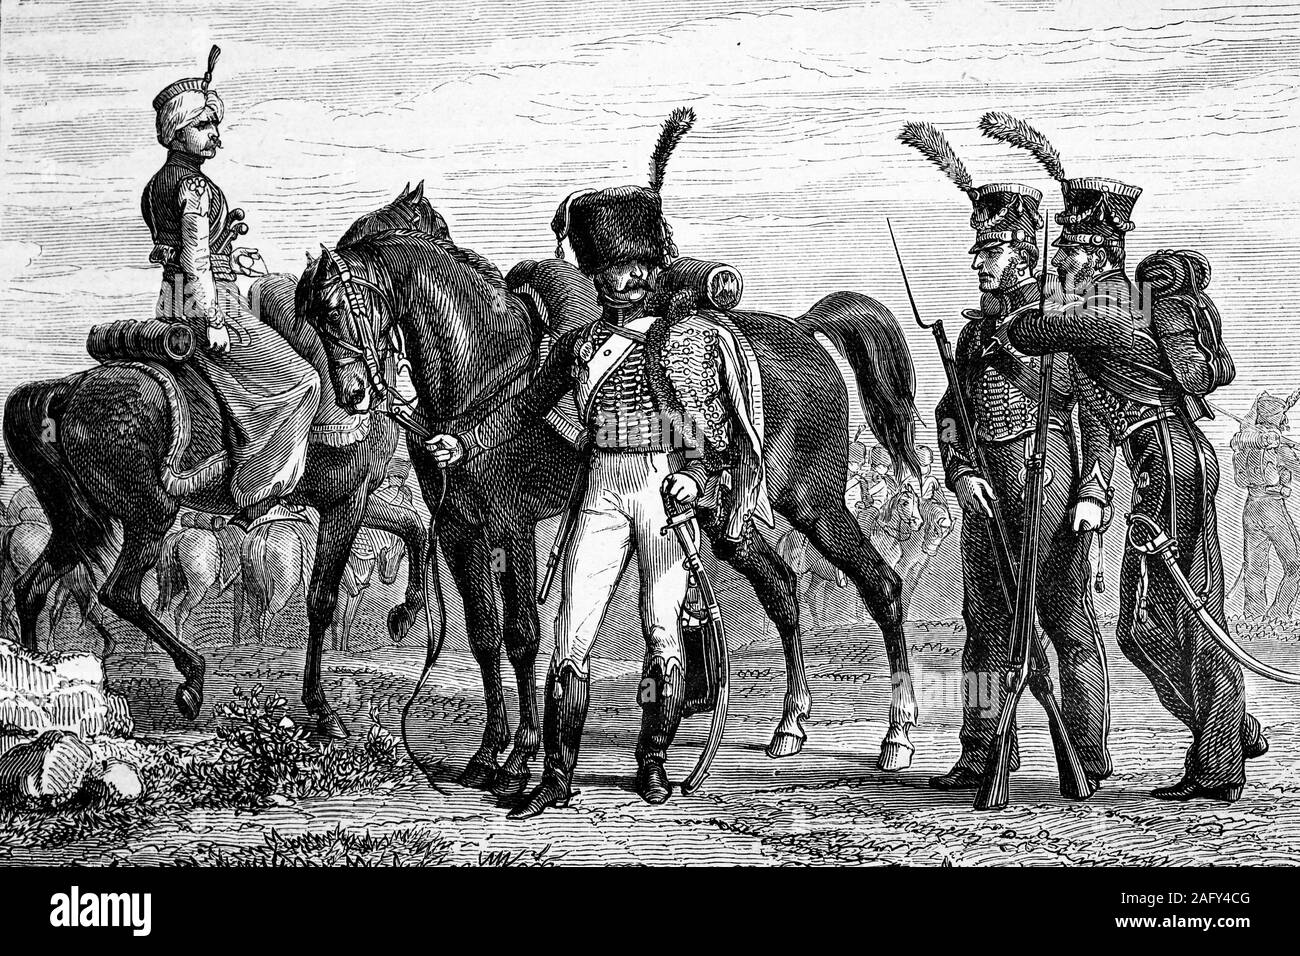 Guardia Imperial: mameluco, cazador de caballería y el cuerpo de infantería de marina. Las guerras napoleónicas. Ilustración de antigüedades. 1890. Foto de stock